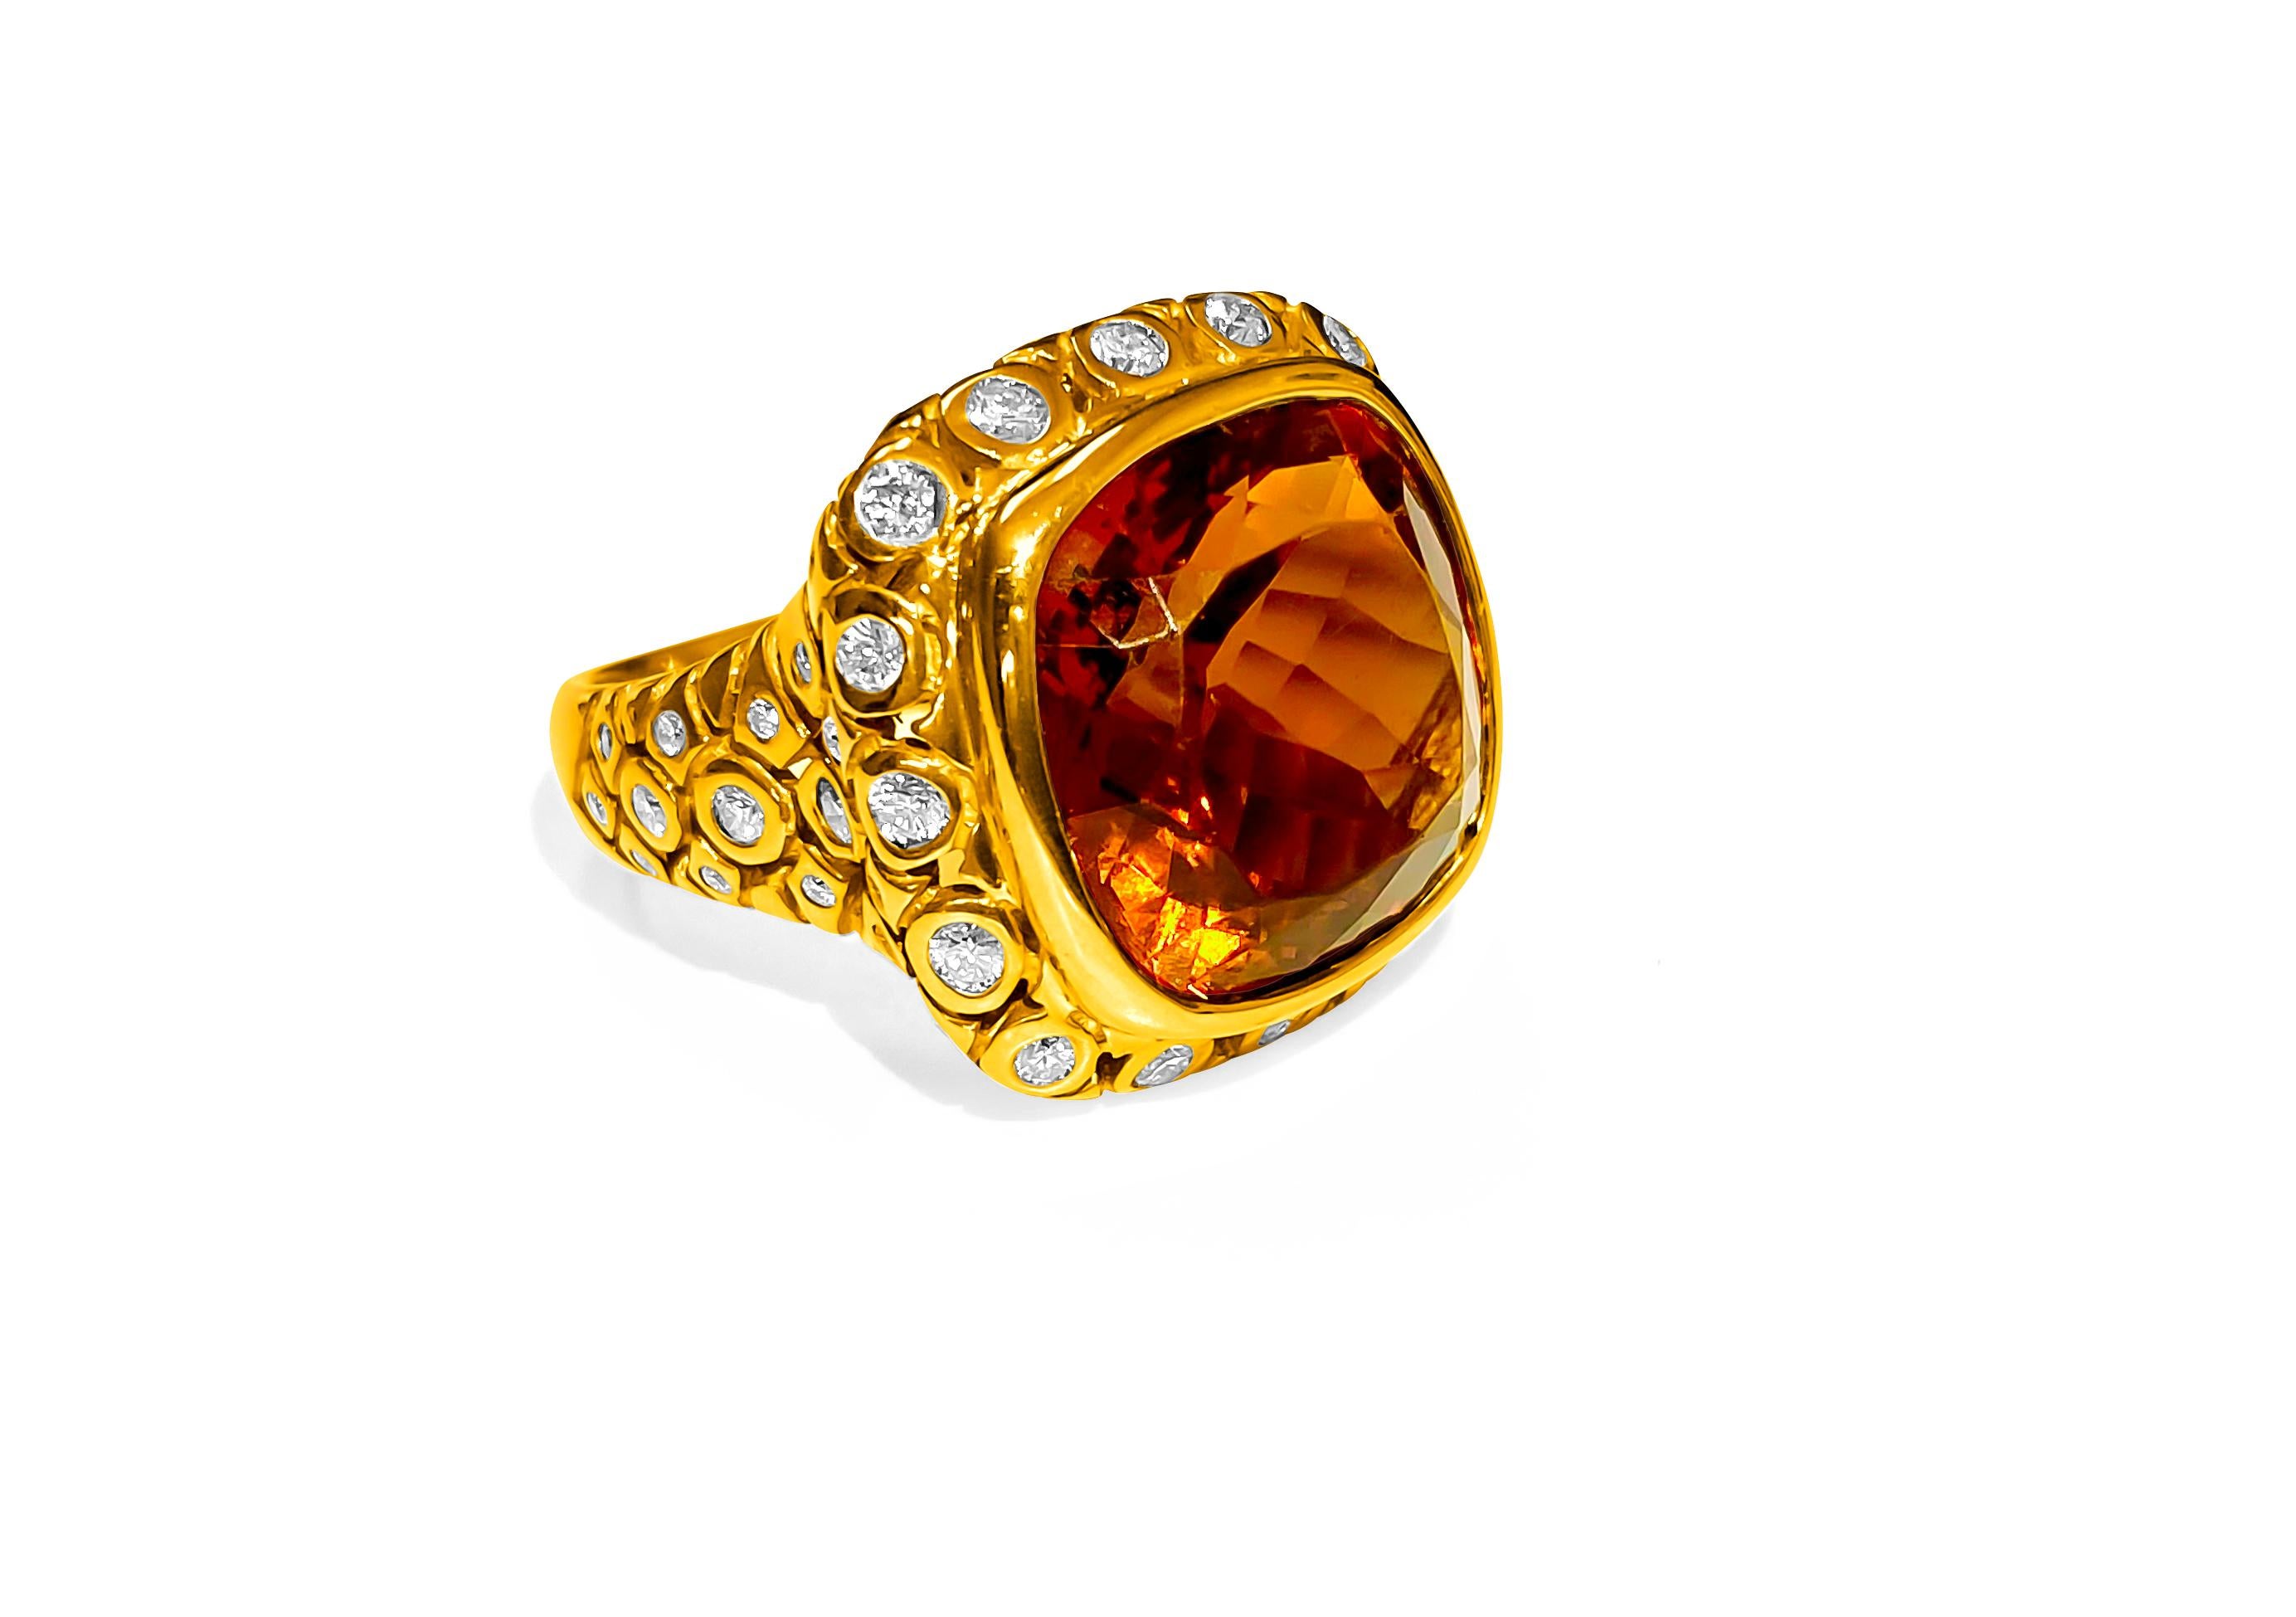 3 carat rose gold engagement ring